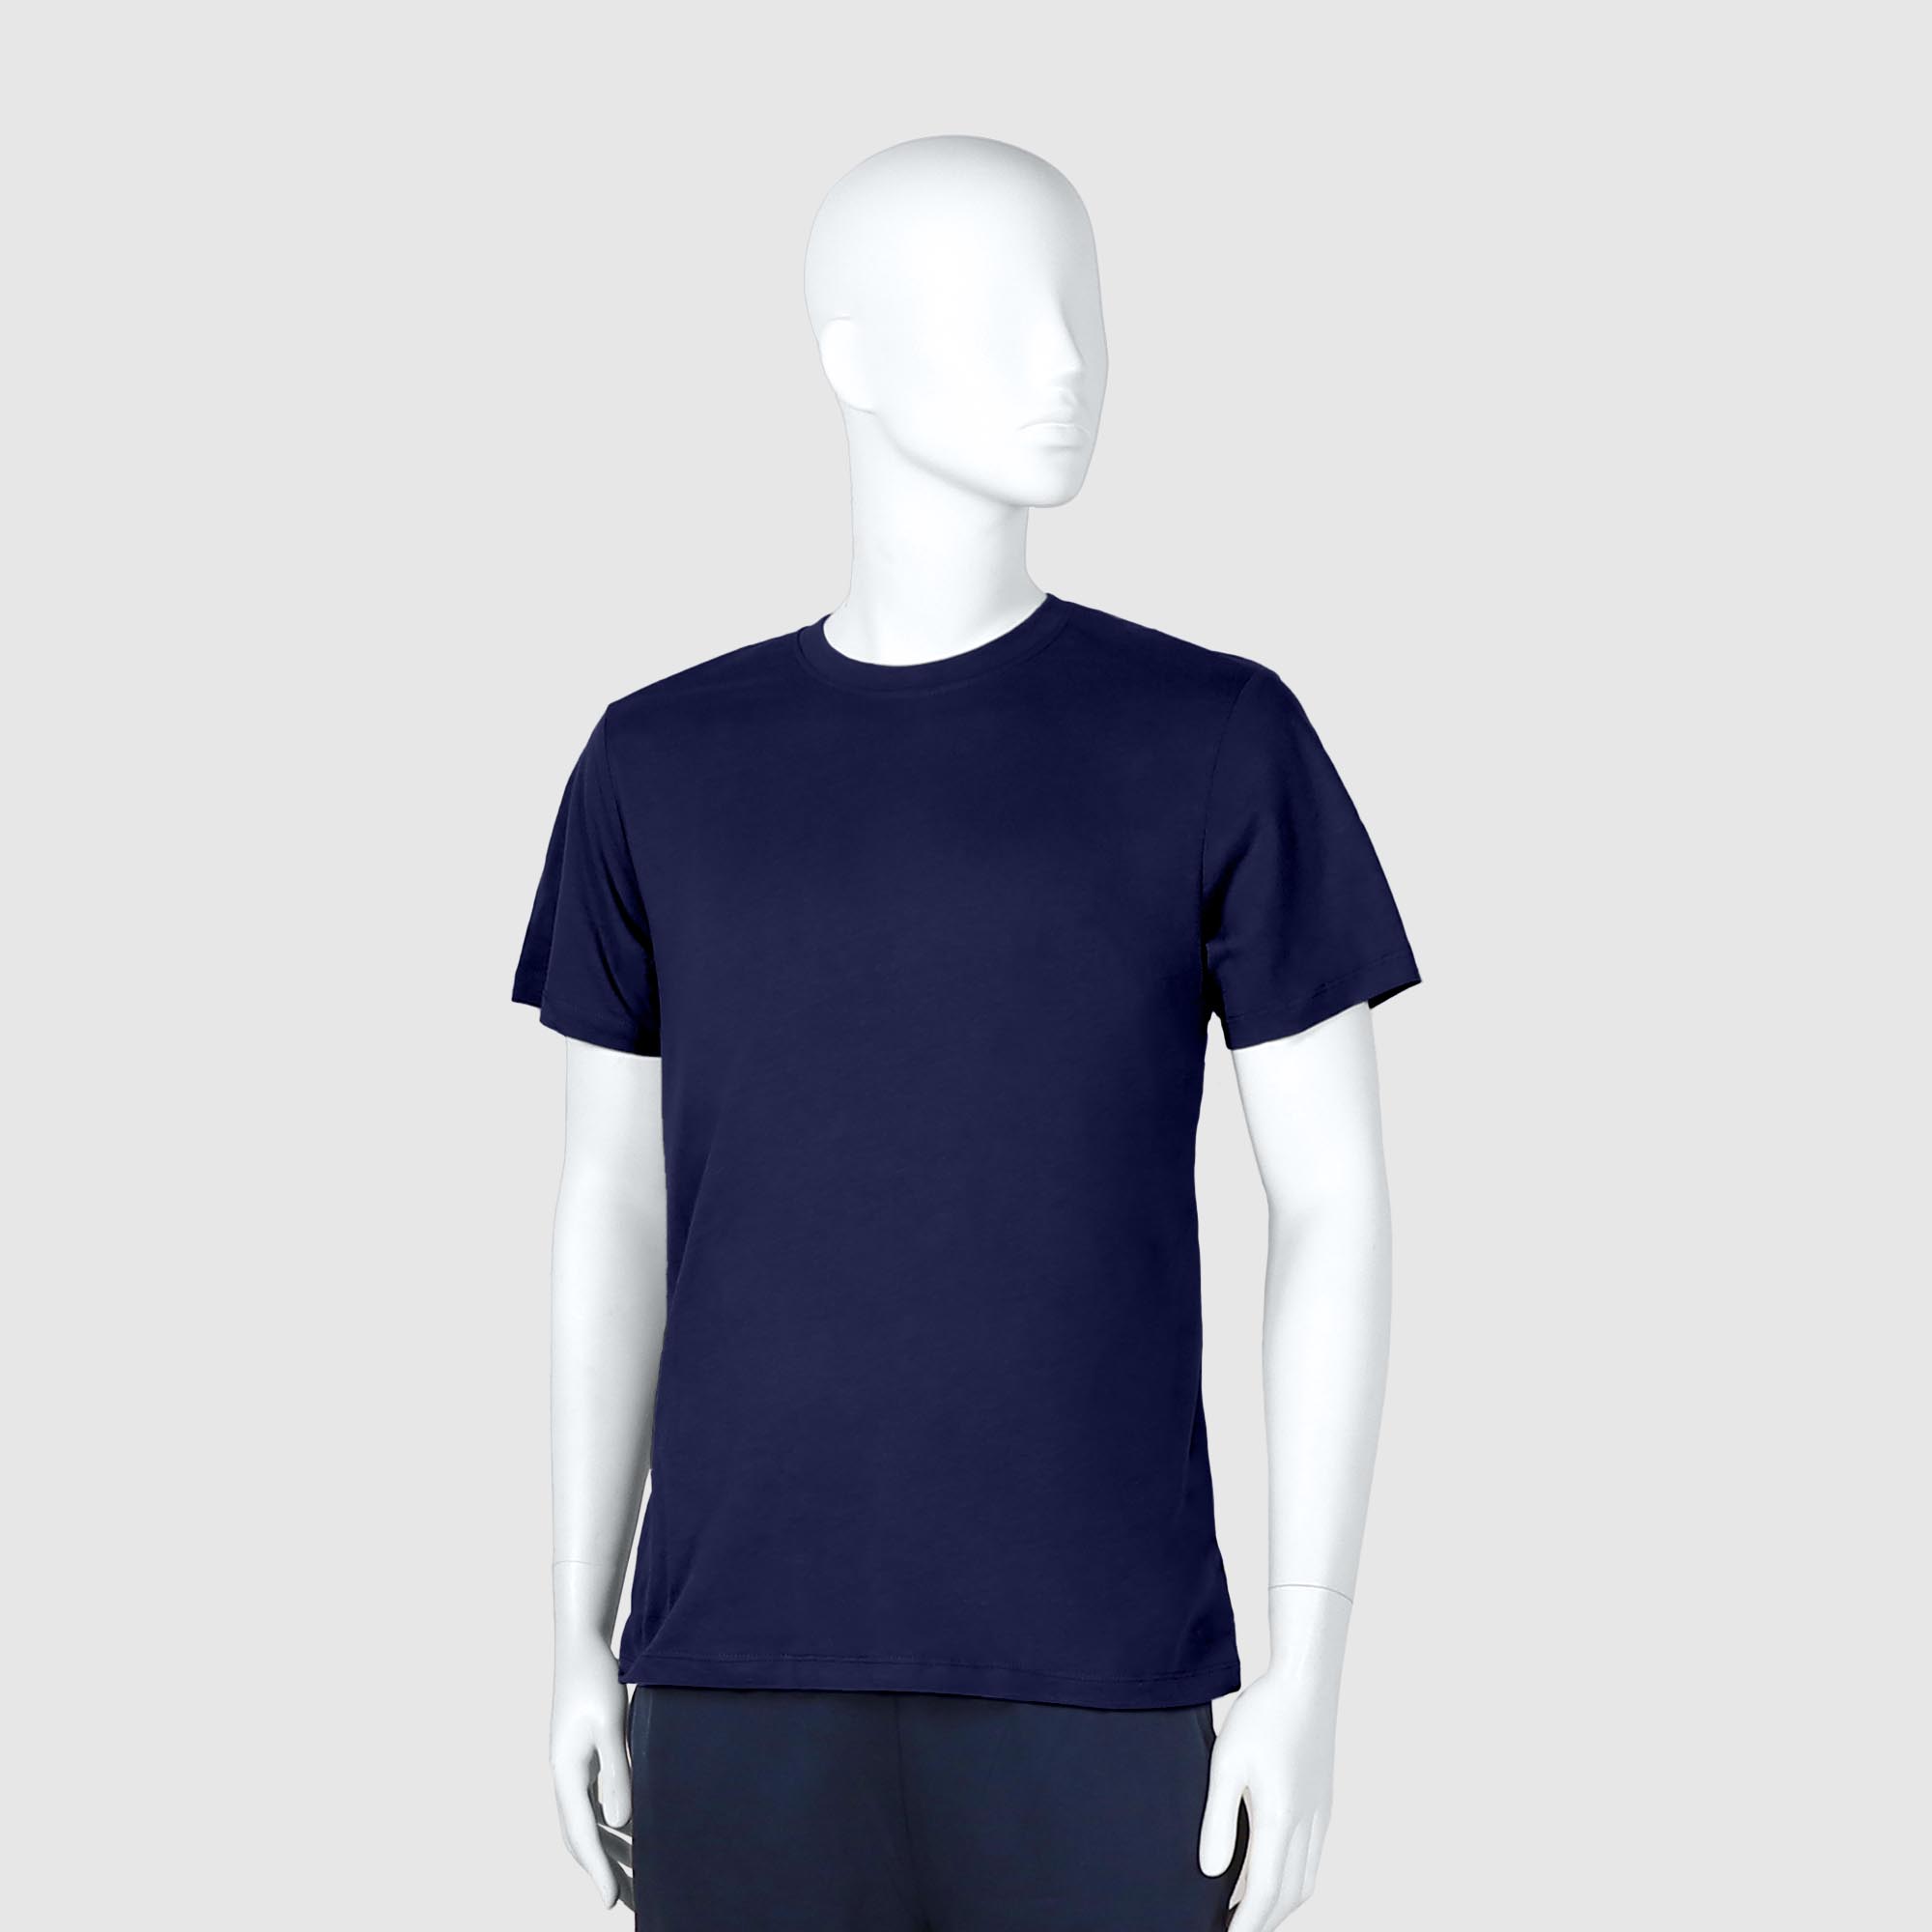 Мужская футболка Diva Teks синяя (DTD-05), цвет синий, размер 44-46 - фото 1